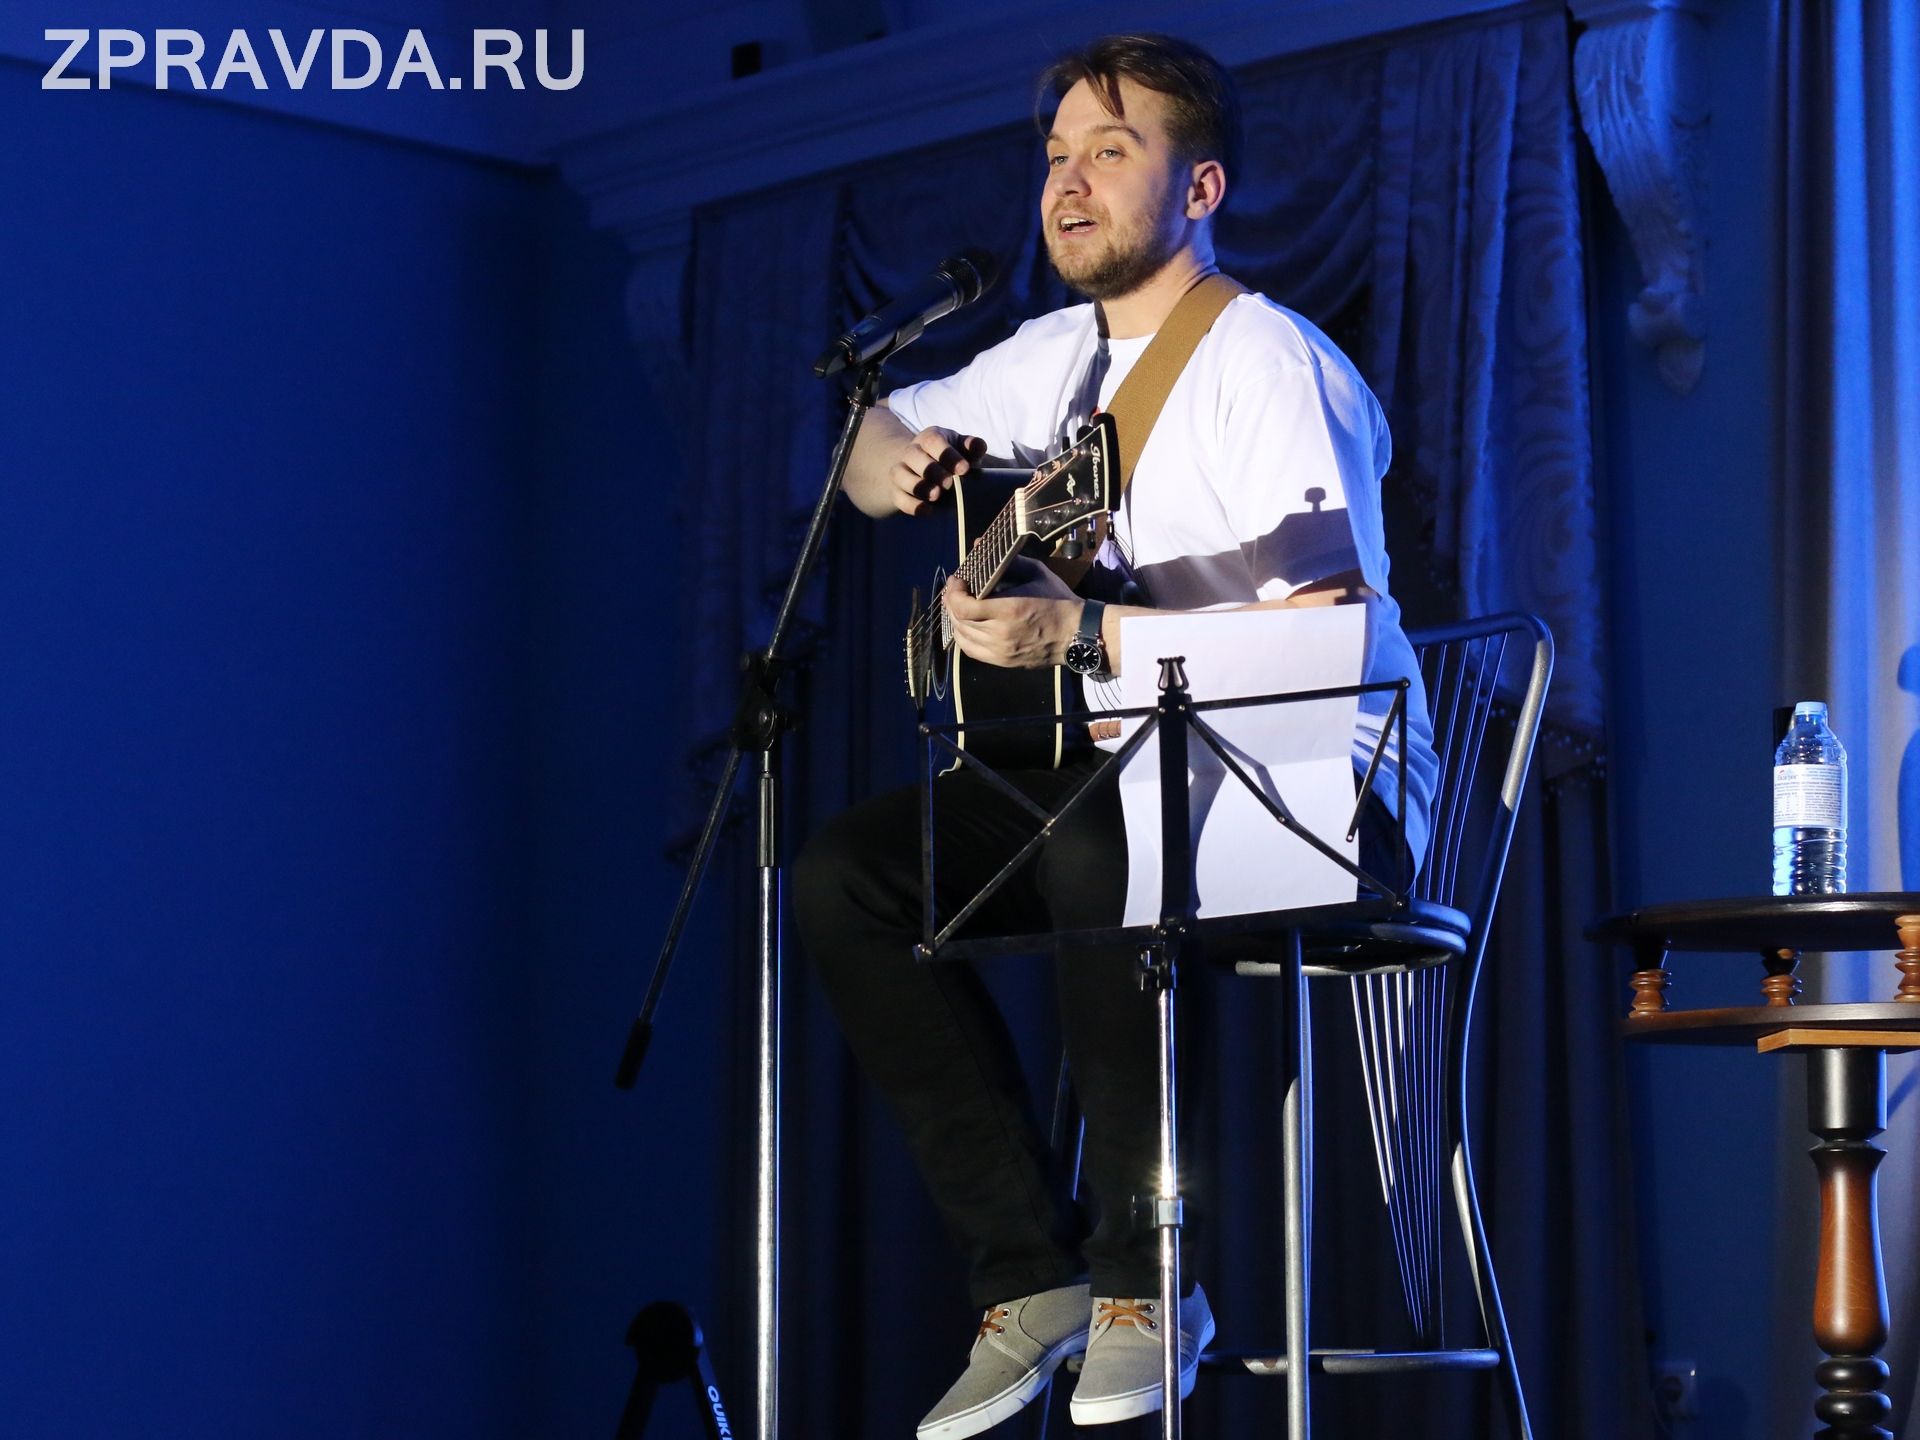 Актер Зеленодольского музыкального театра Максим Малин презентовал дебютный альбом